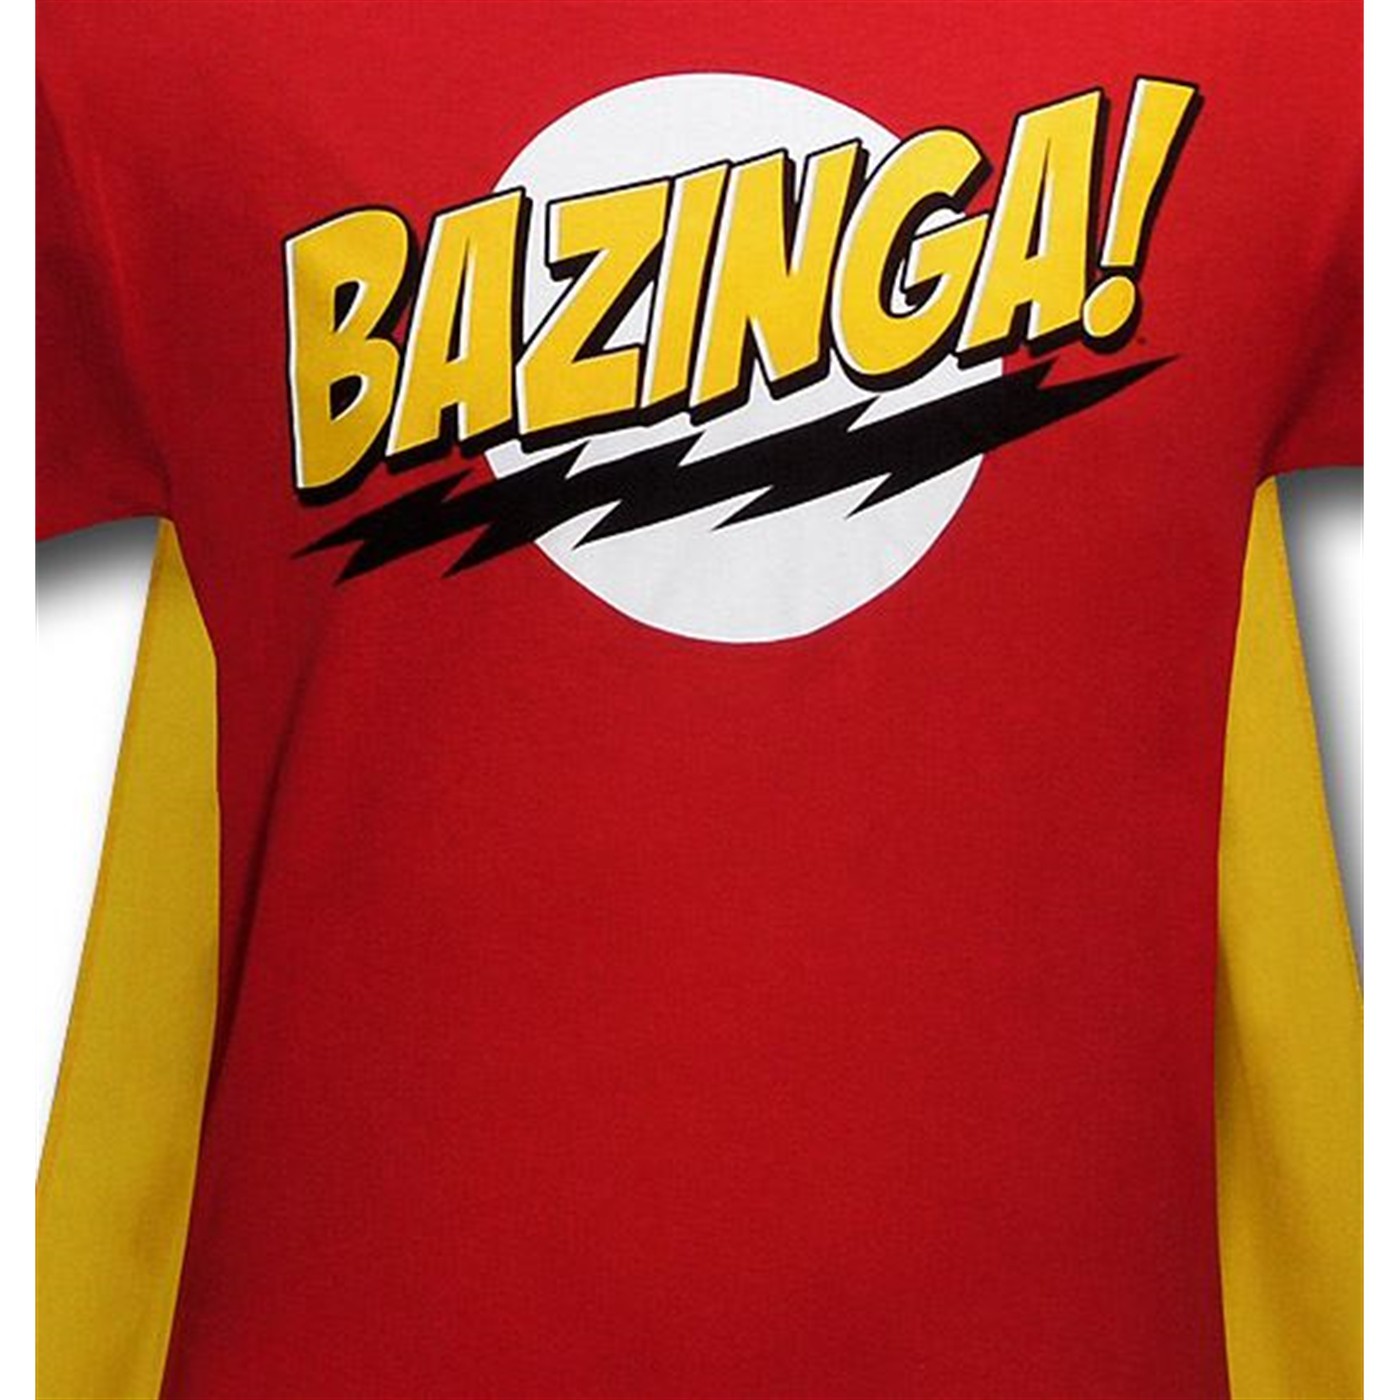 bazinga shirt